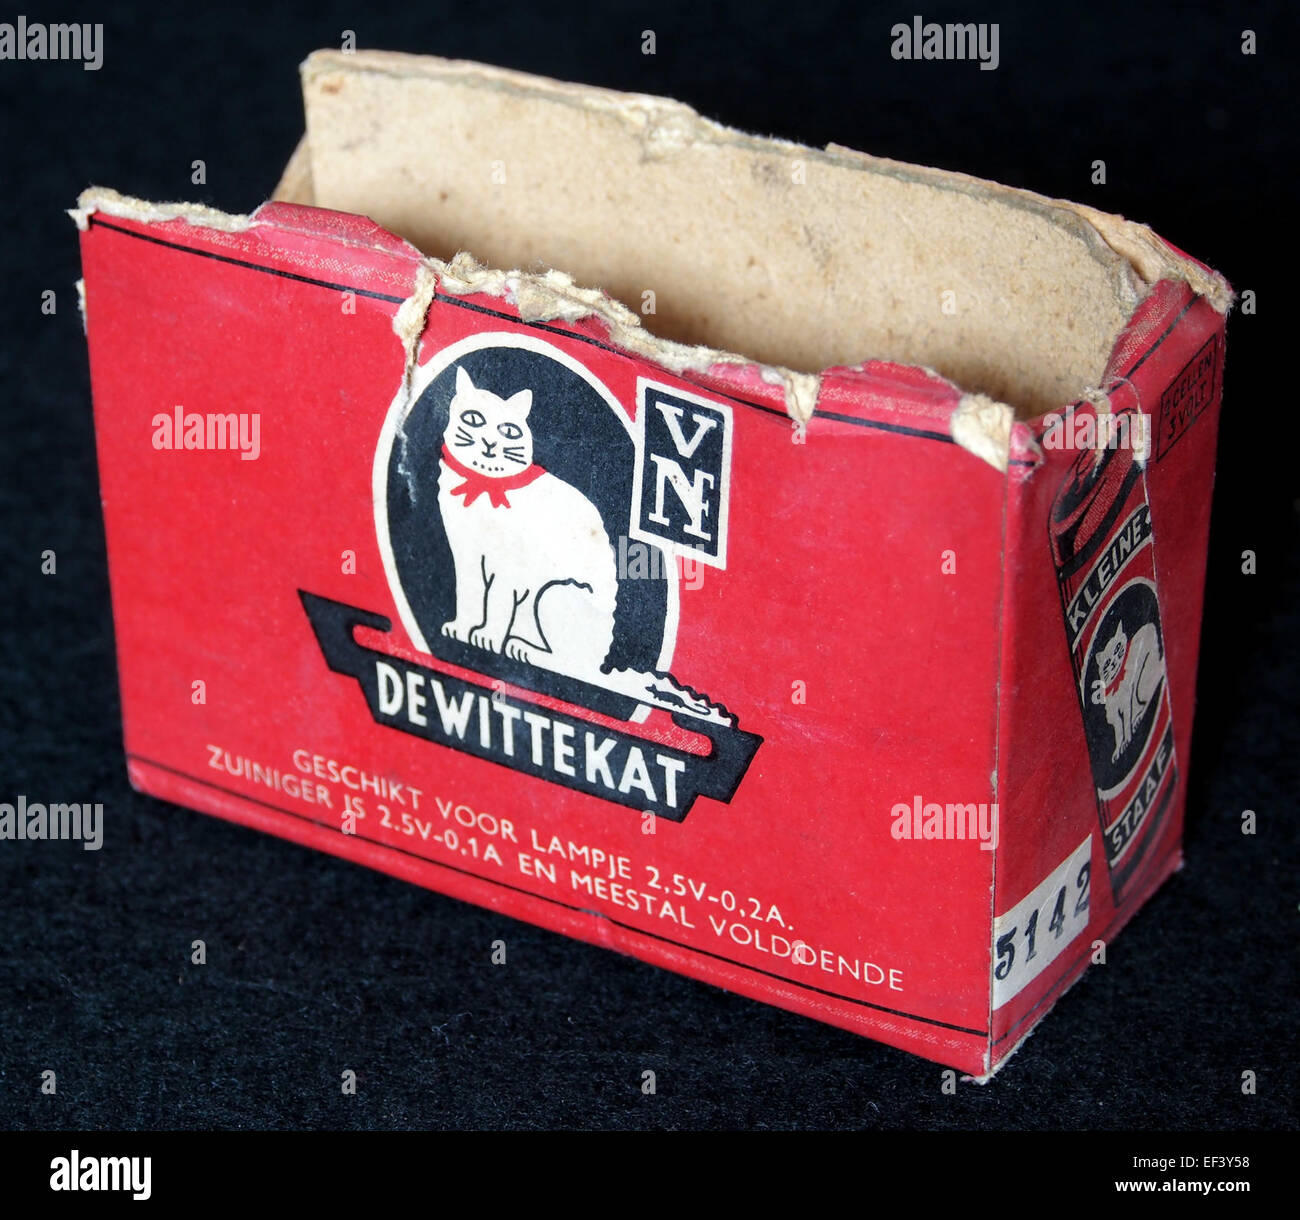 De Witte Kat, leeg doosje, foto 1 Stock Photo